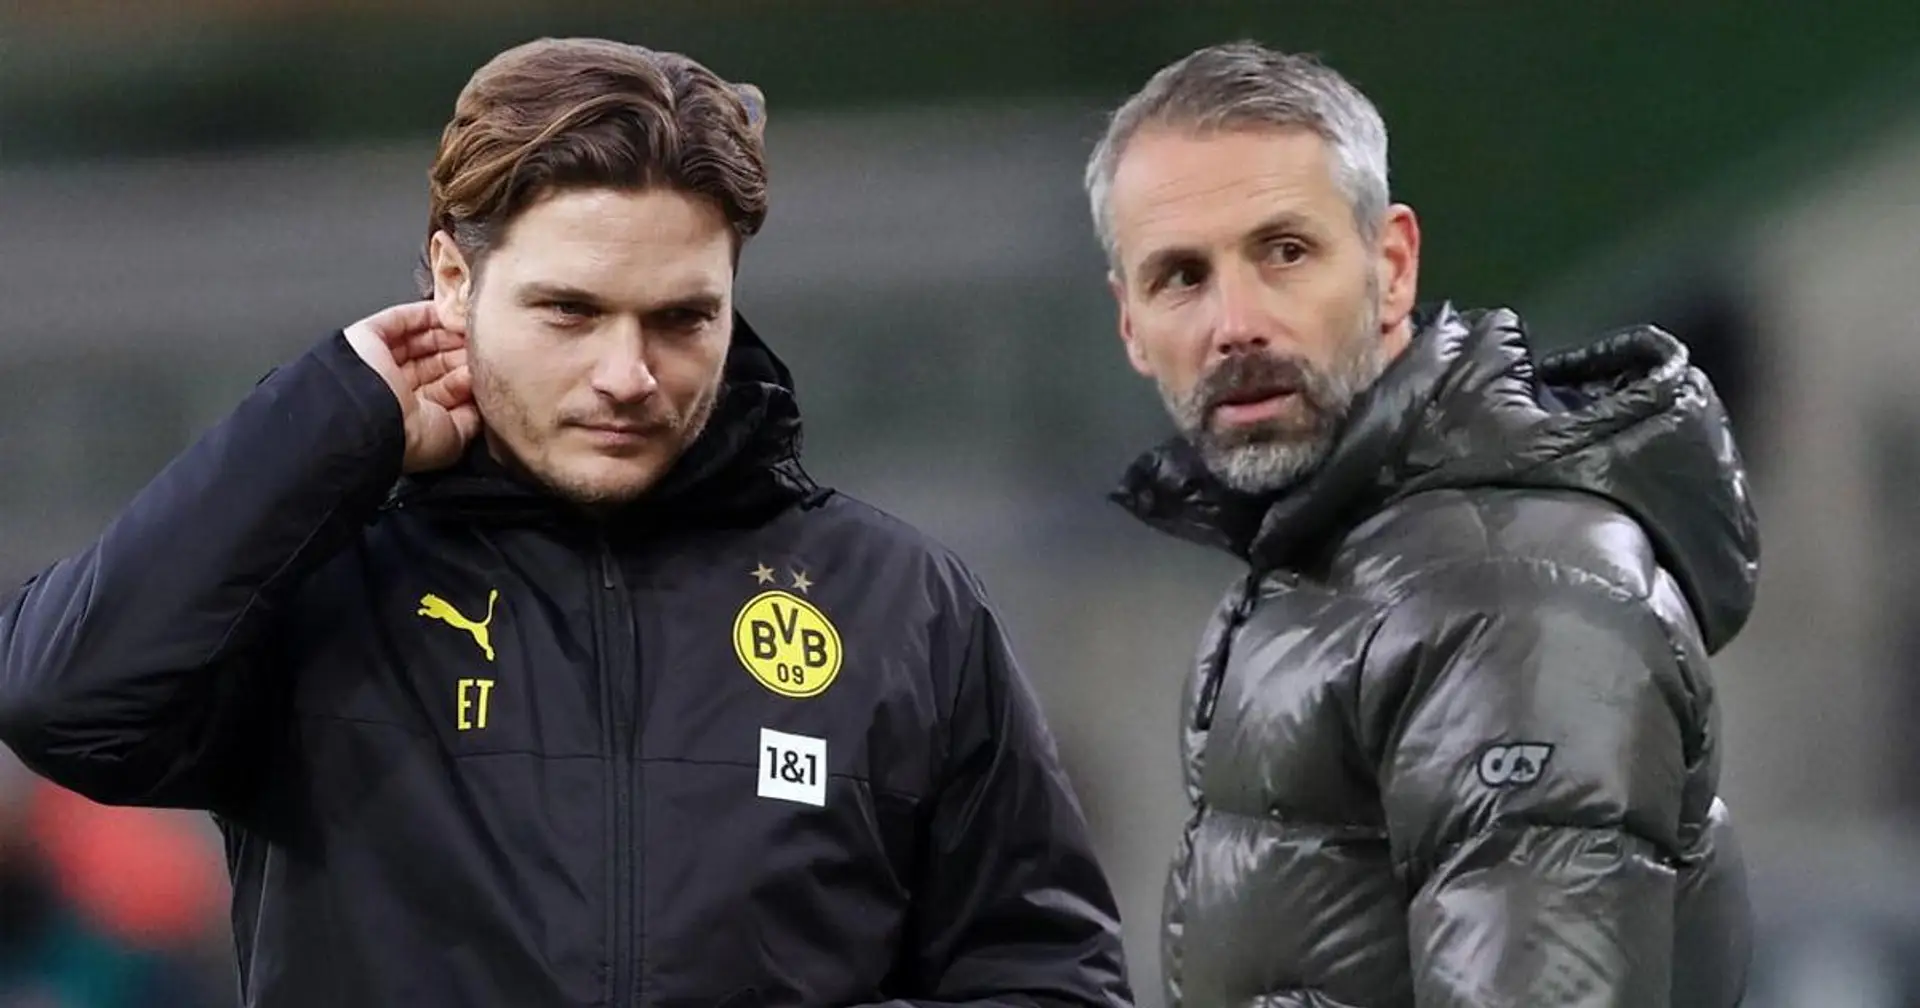 "...dann geht es in die Hose": Ex-BVB-Jugendcoach zweifelt daran, ob Terzic im Verein als Co-Trainer bleiben sollte